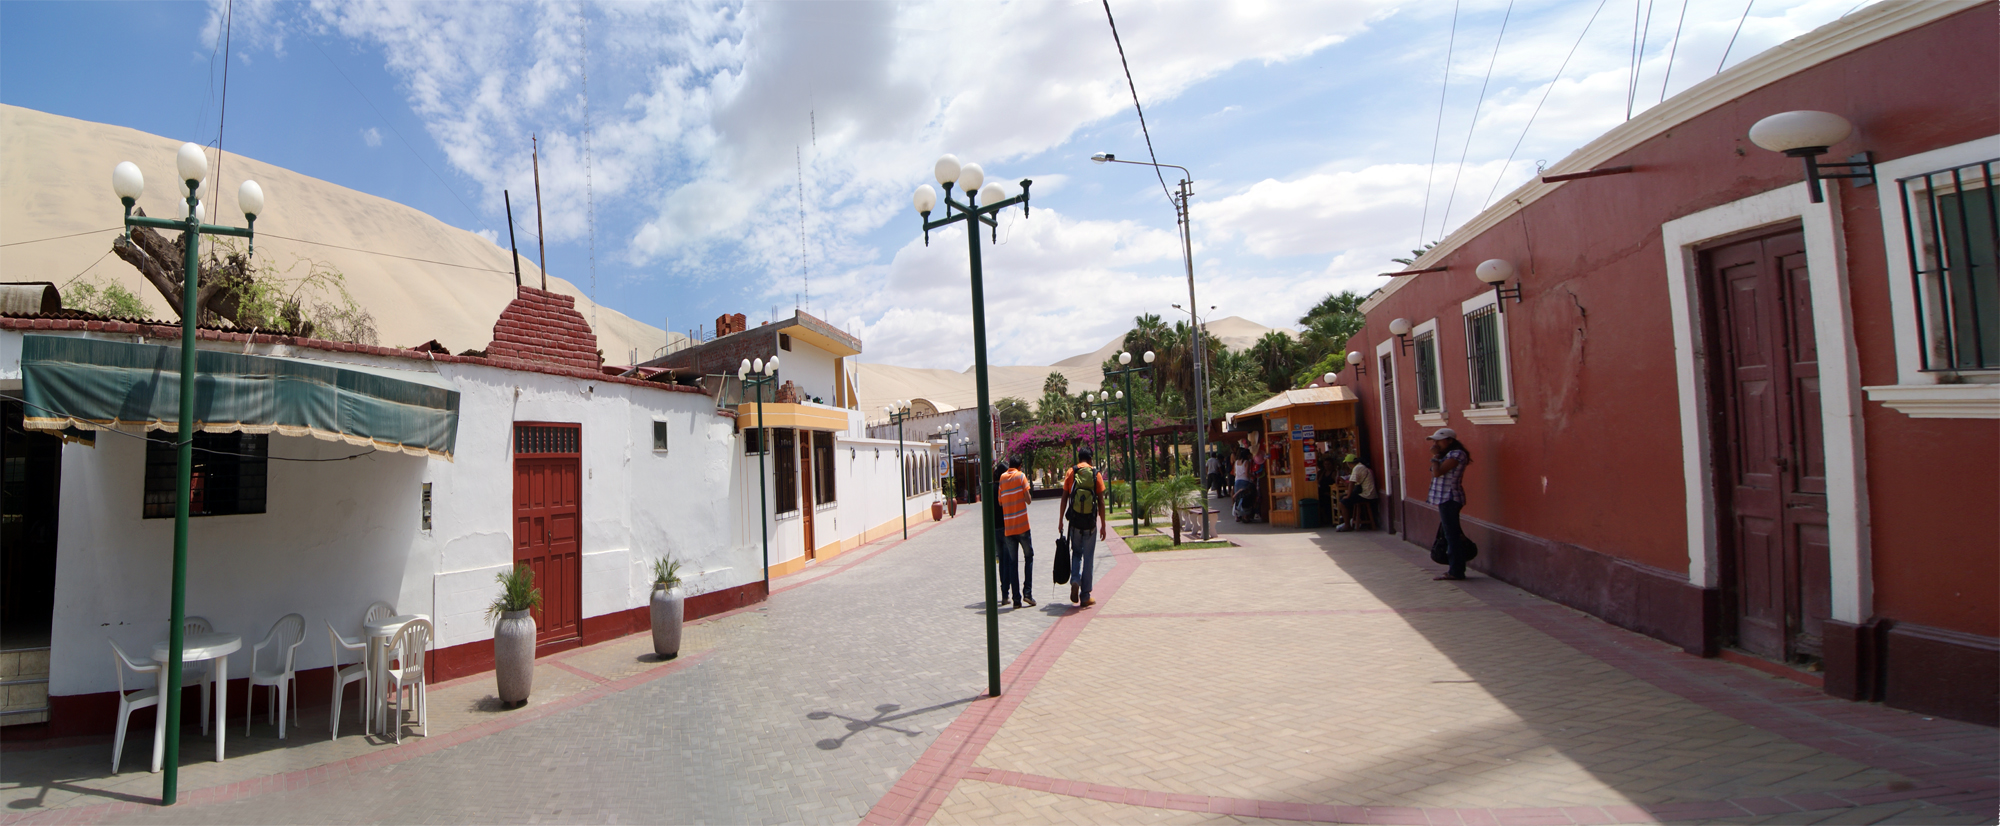 Calle de Huacachina